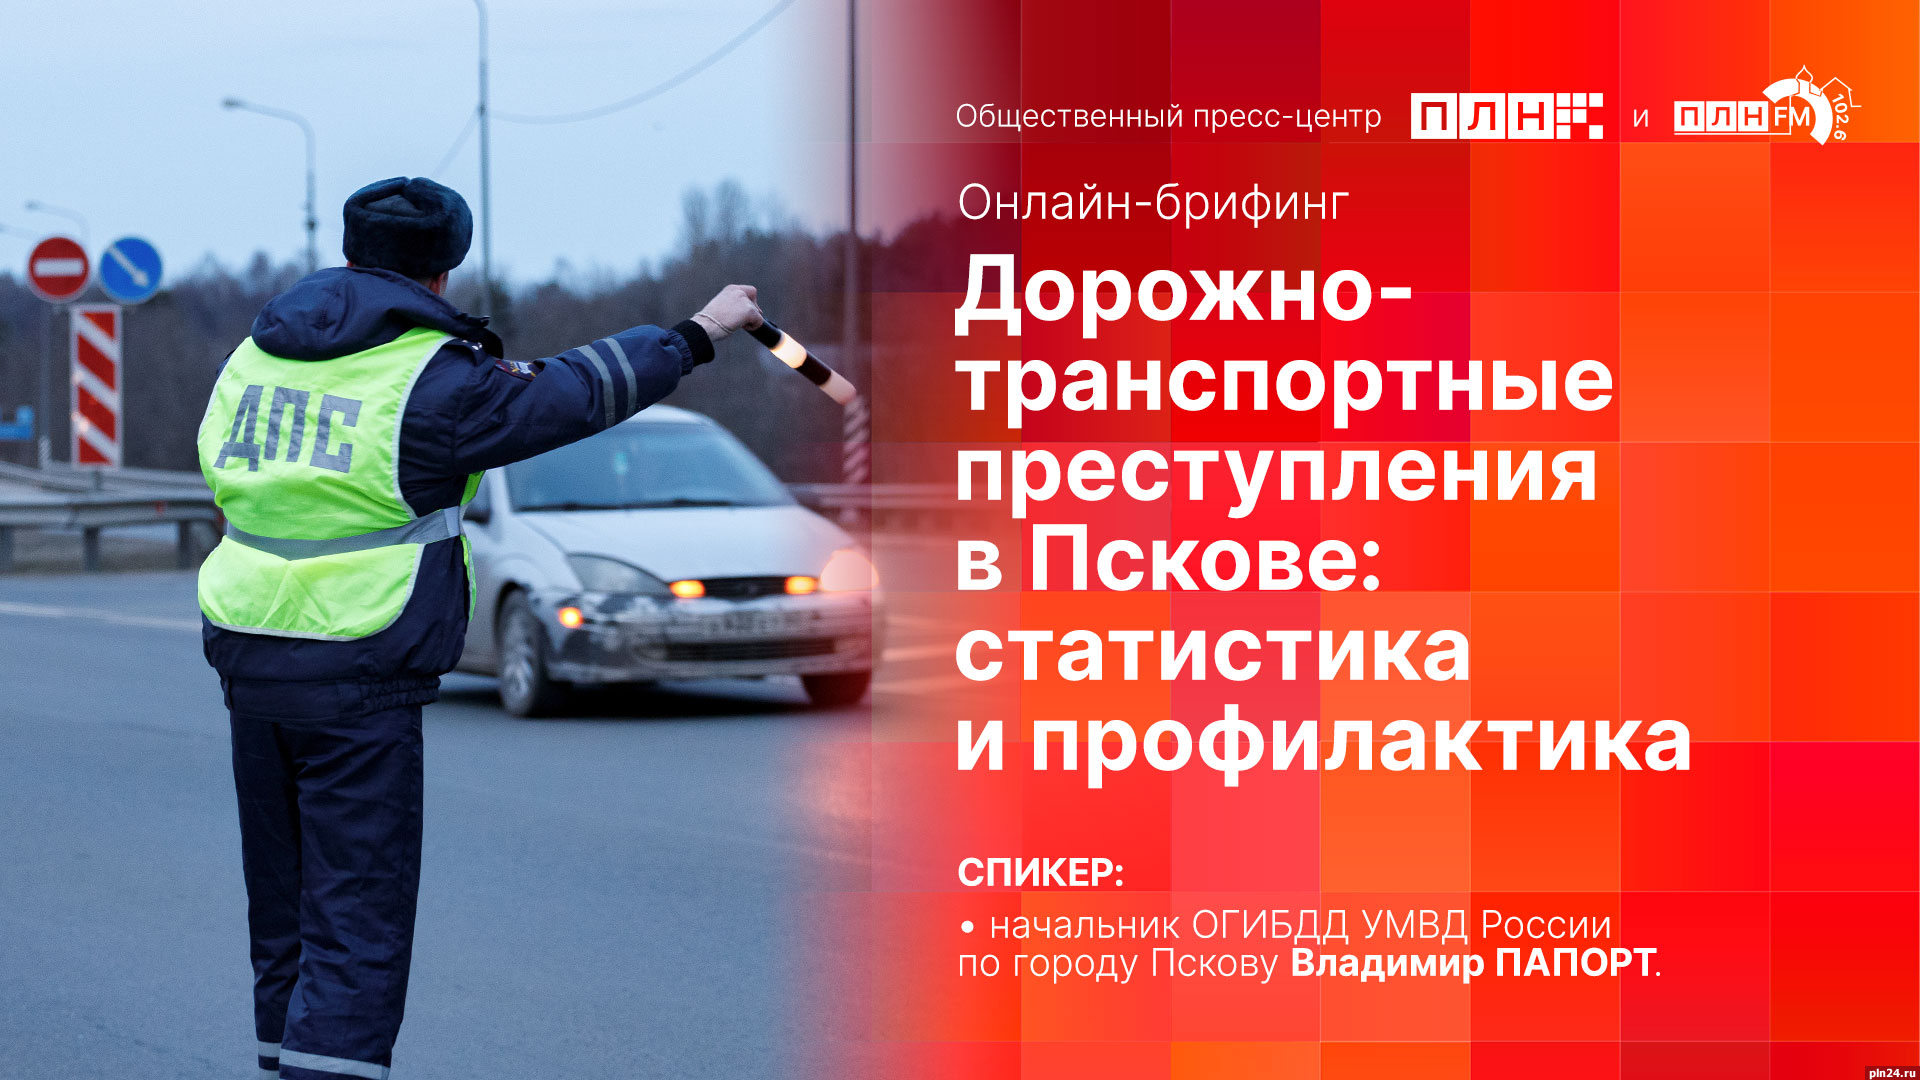 Начинается видеотрансляция онлайн-брифинга о дорожно-транспортных преступлениях в Пскове